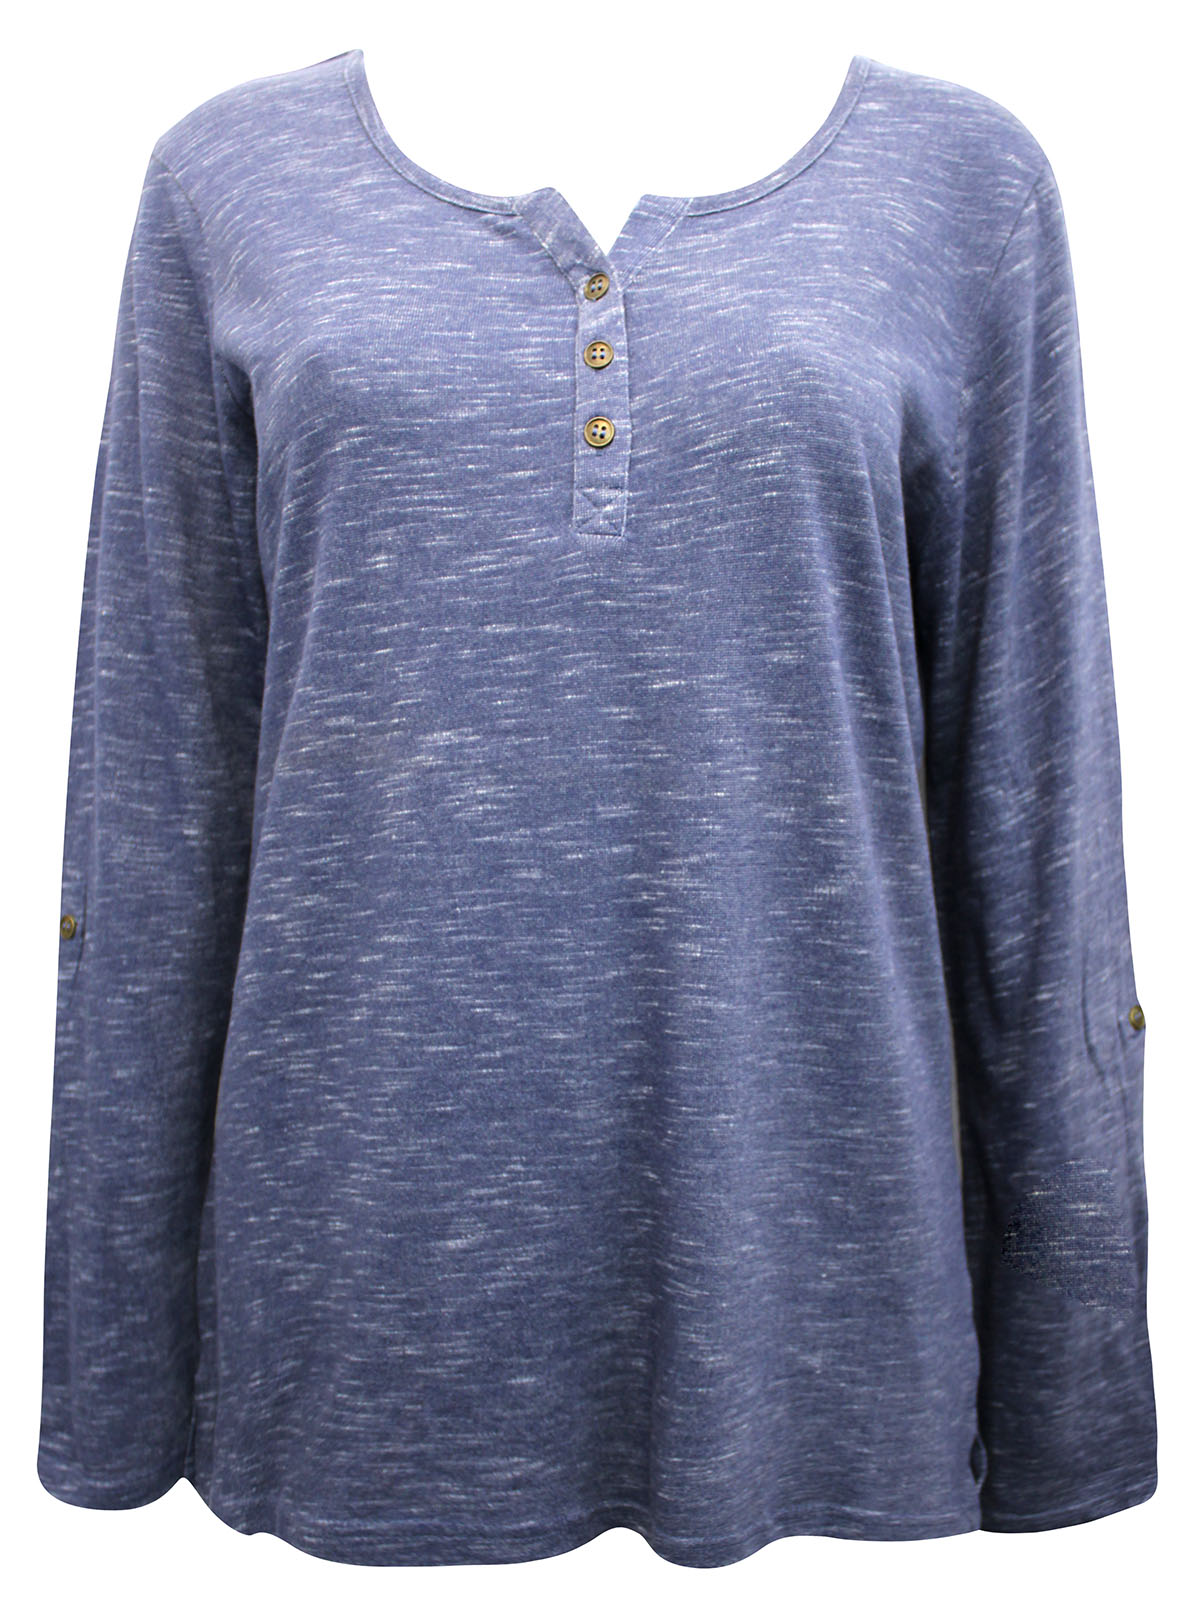 BPC - - BPC LIGHT-BLUE Long Sleeve Melange Knit Jersey Henley Top ...